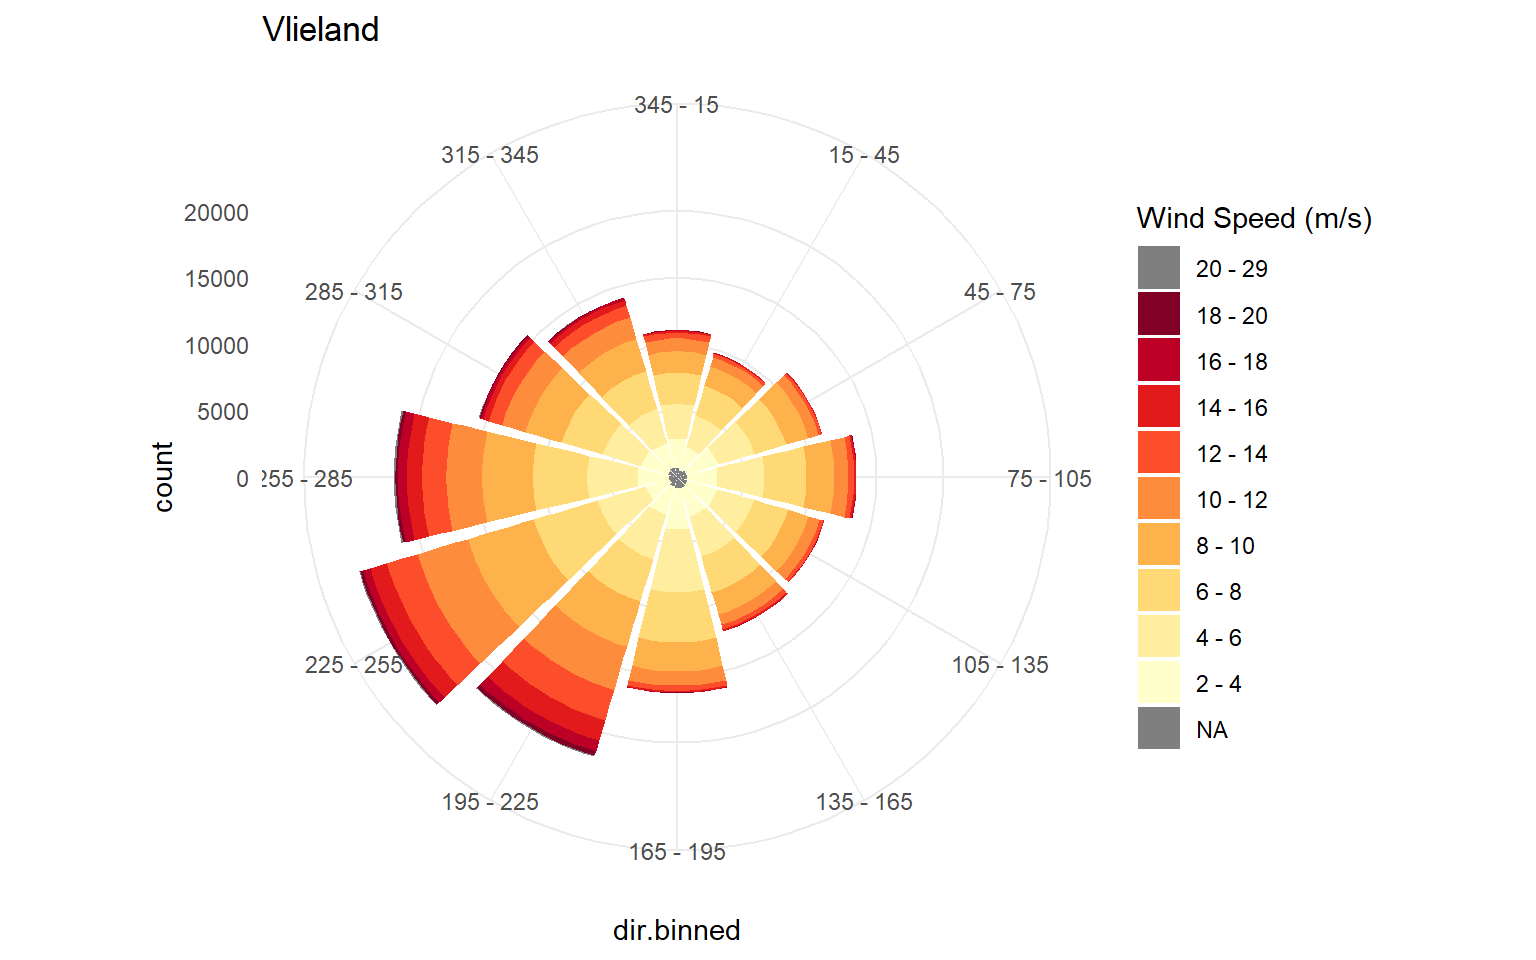 Windroos over de periode 1990 - 2018. Kleuren geven klassen van windsnelheid aan, de lengte van de spaken de windsterktefrequentie/voorkomen per windrichting.